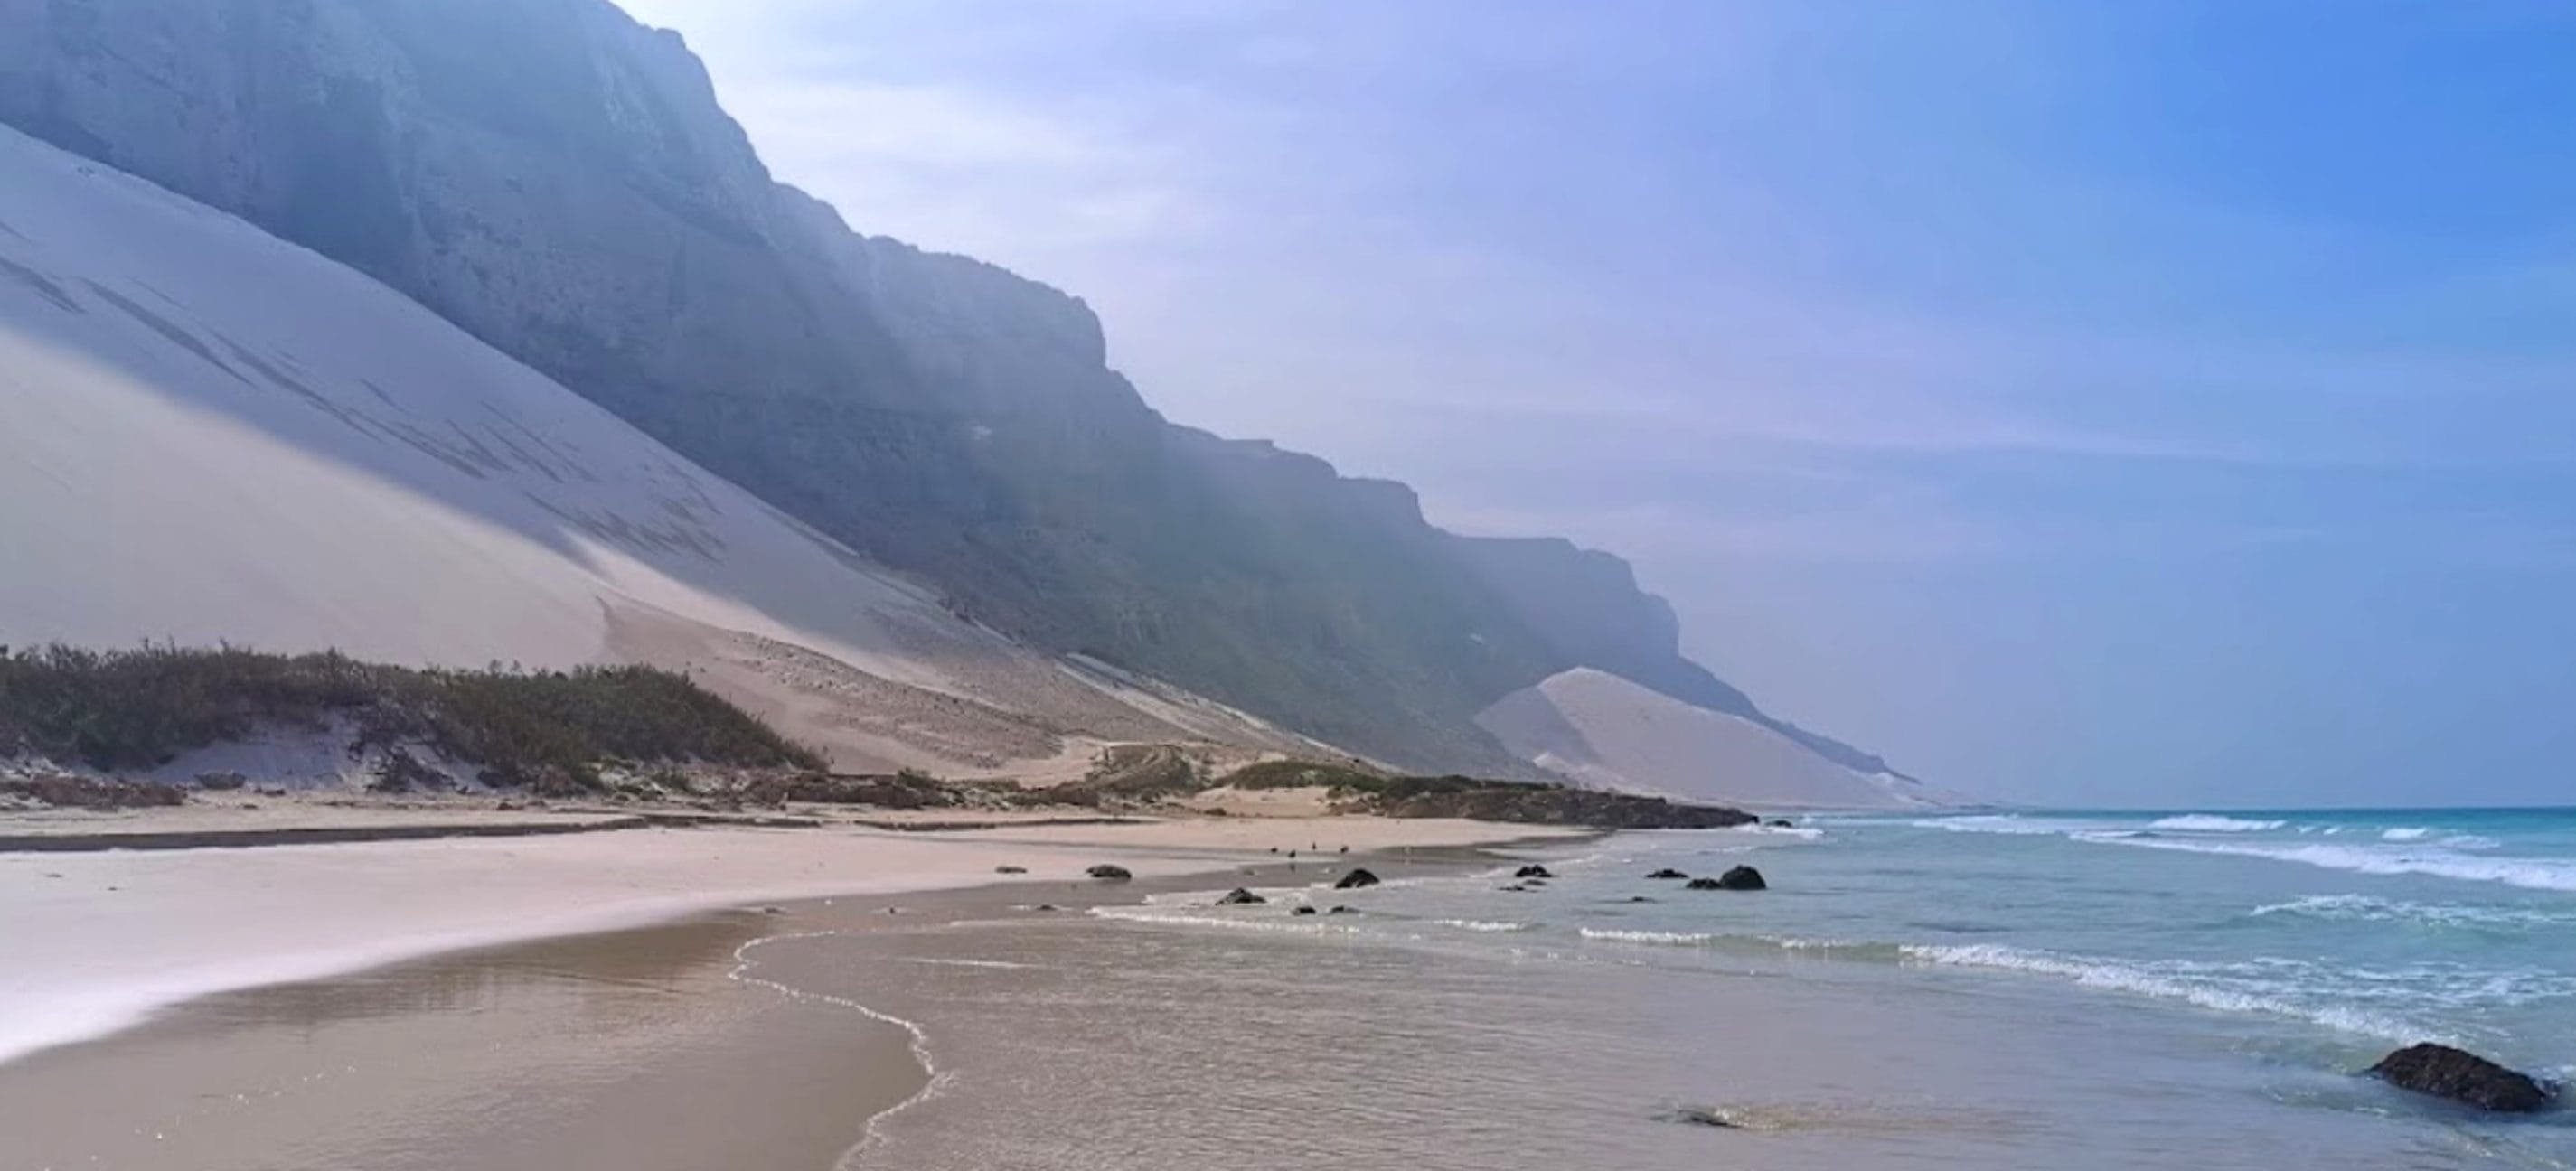 Dunes de sable blanc sur la plage d'Ahrer, Socotra